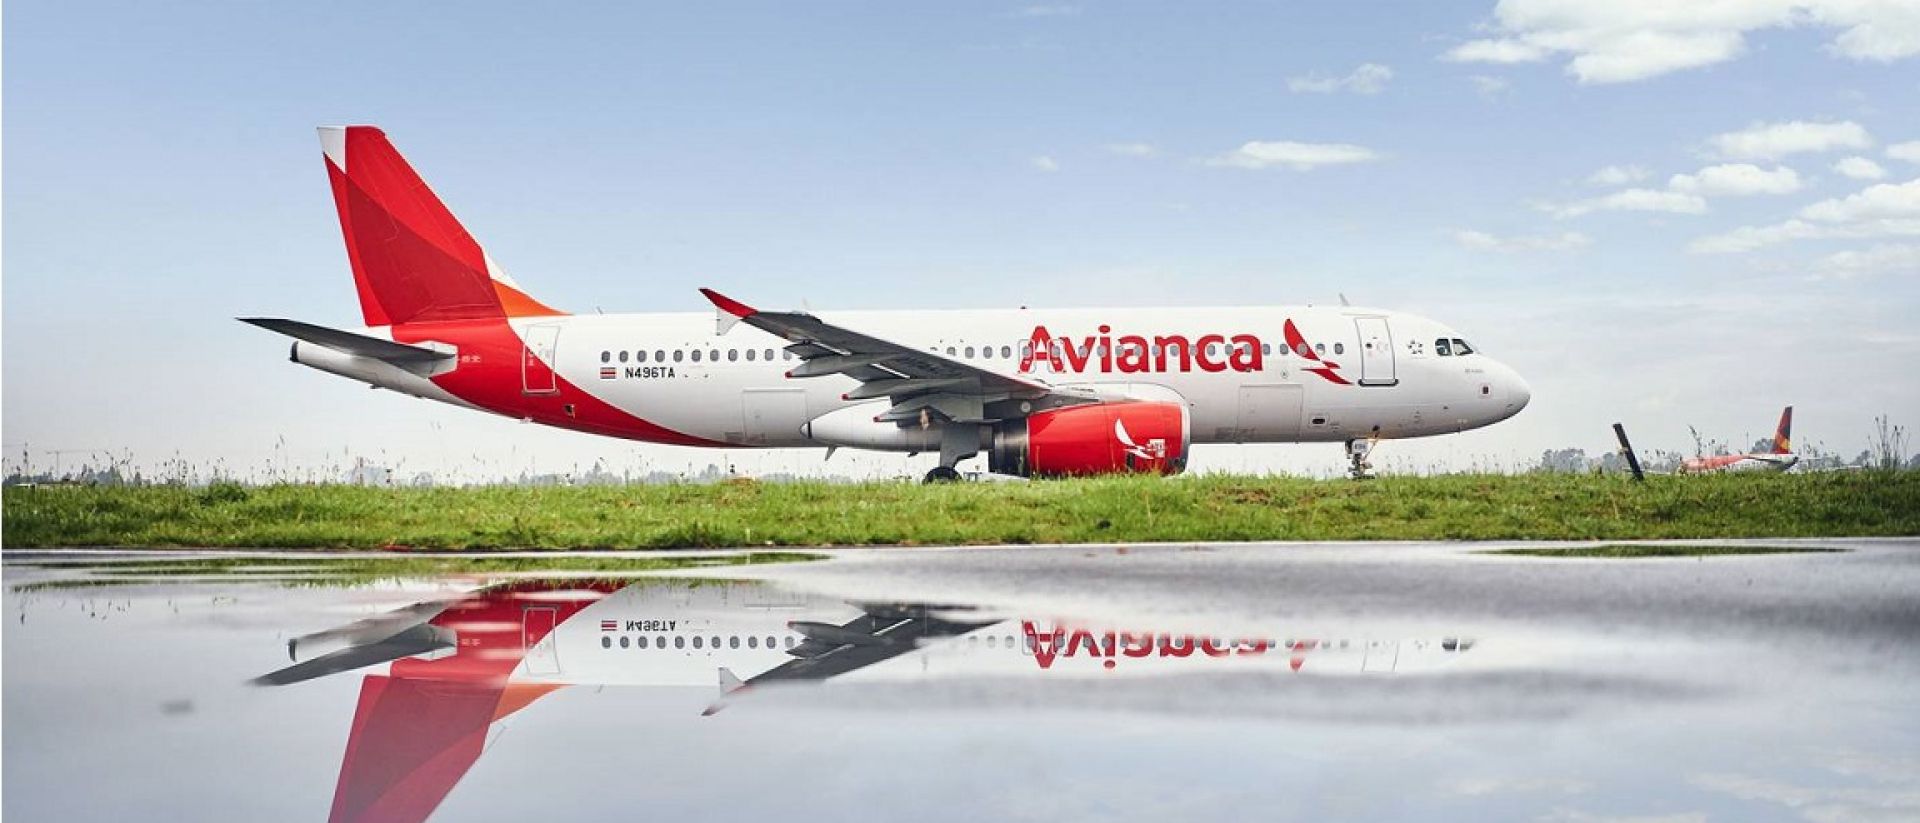 Avianca publica nuevas tarifas en vuelos internacionales Expreso